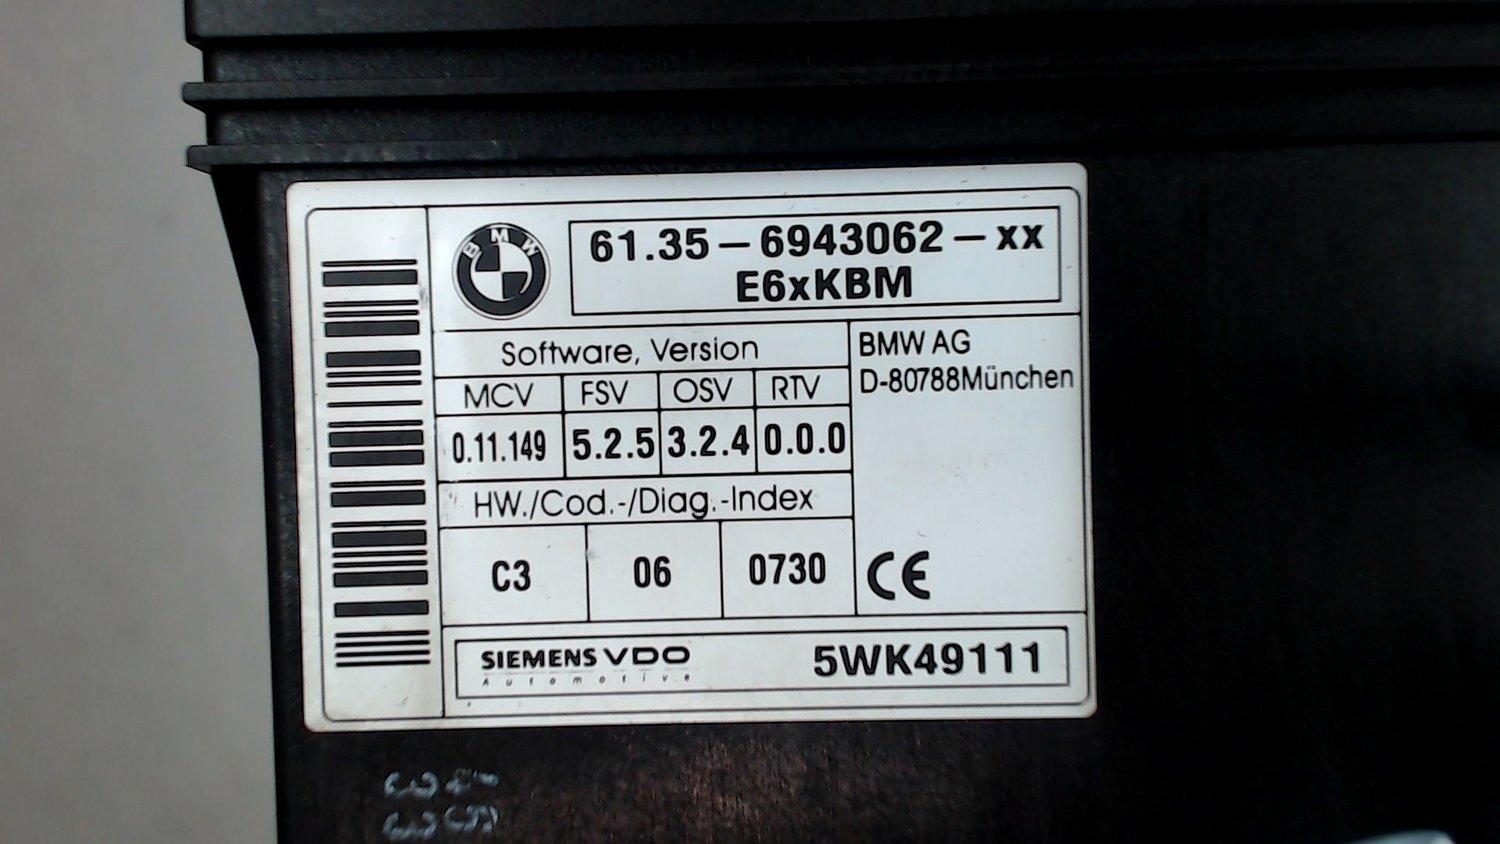 61.356943062 Блок комфорта BMW 5 E60 2003-2009 2004 61.35-6943062